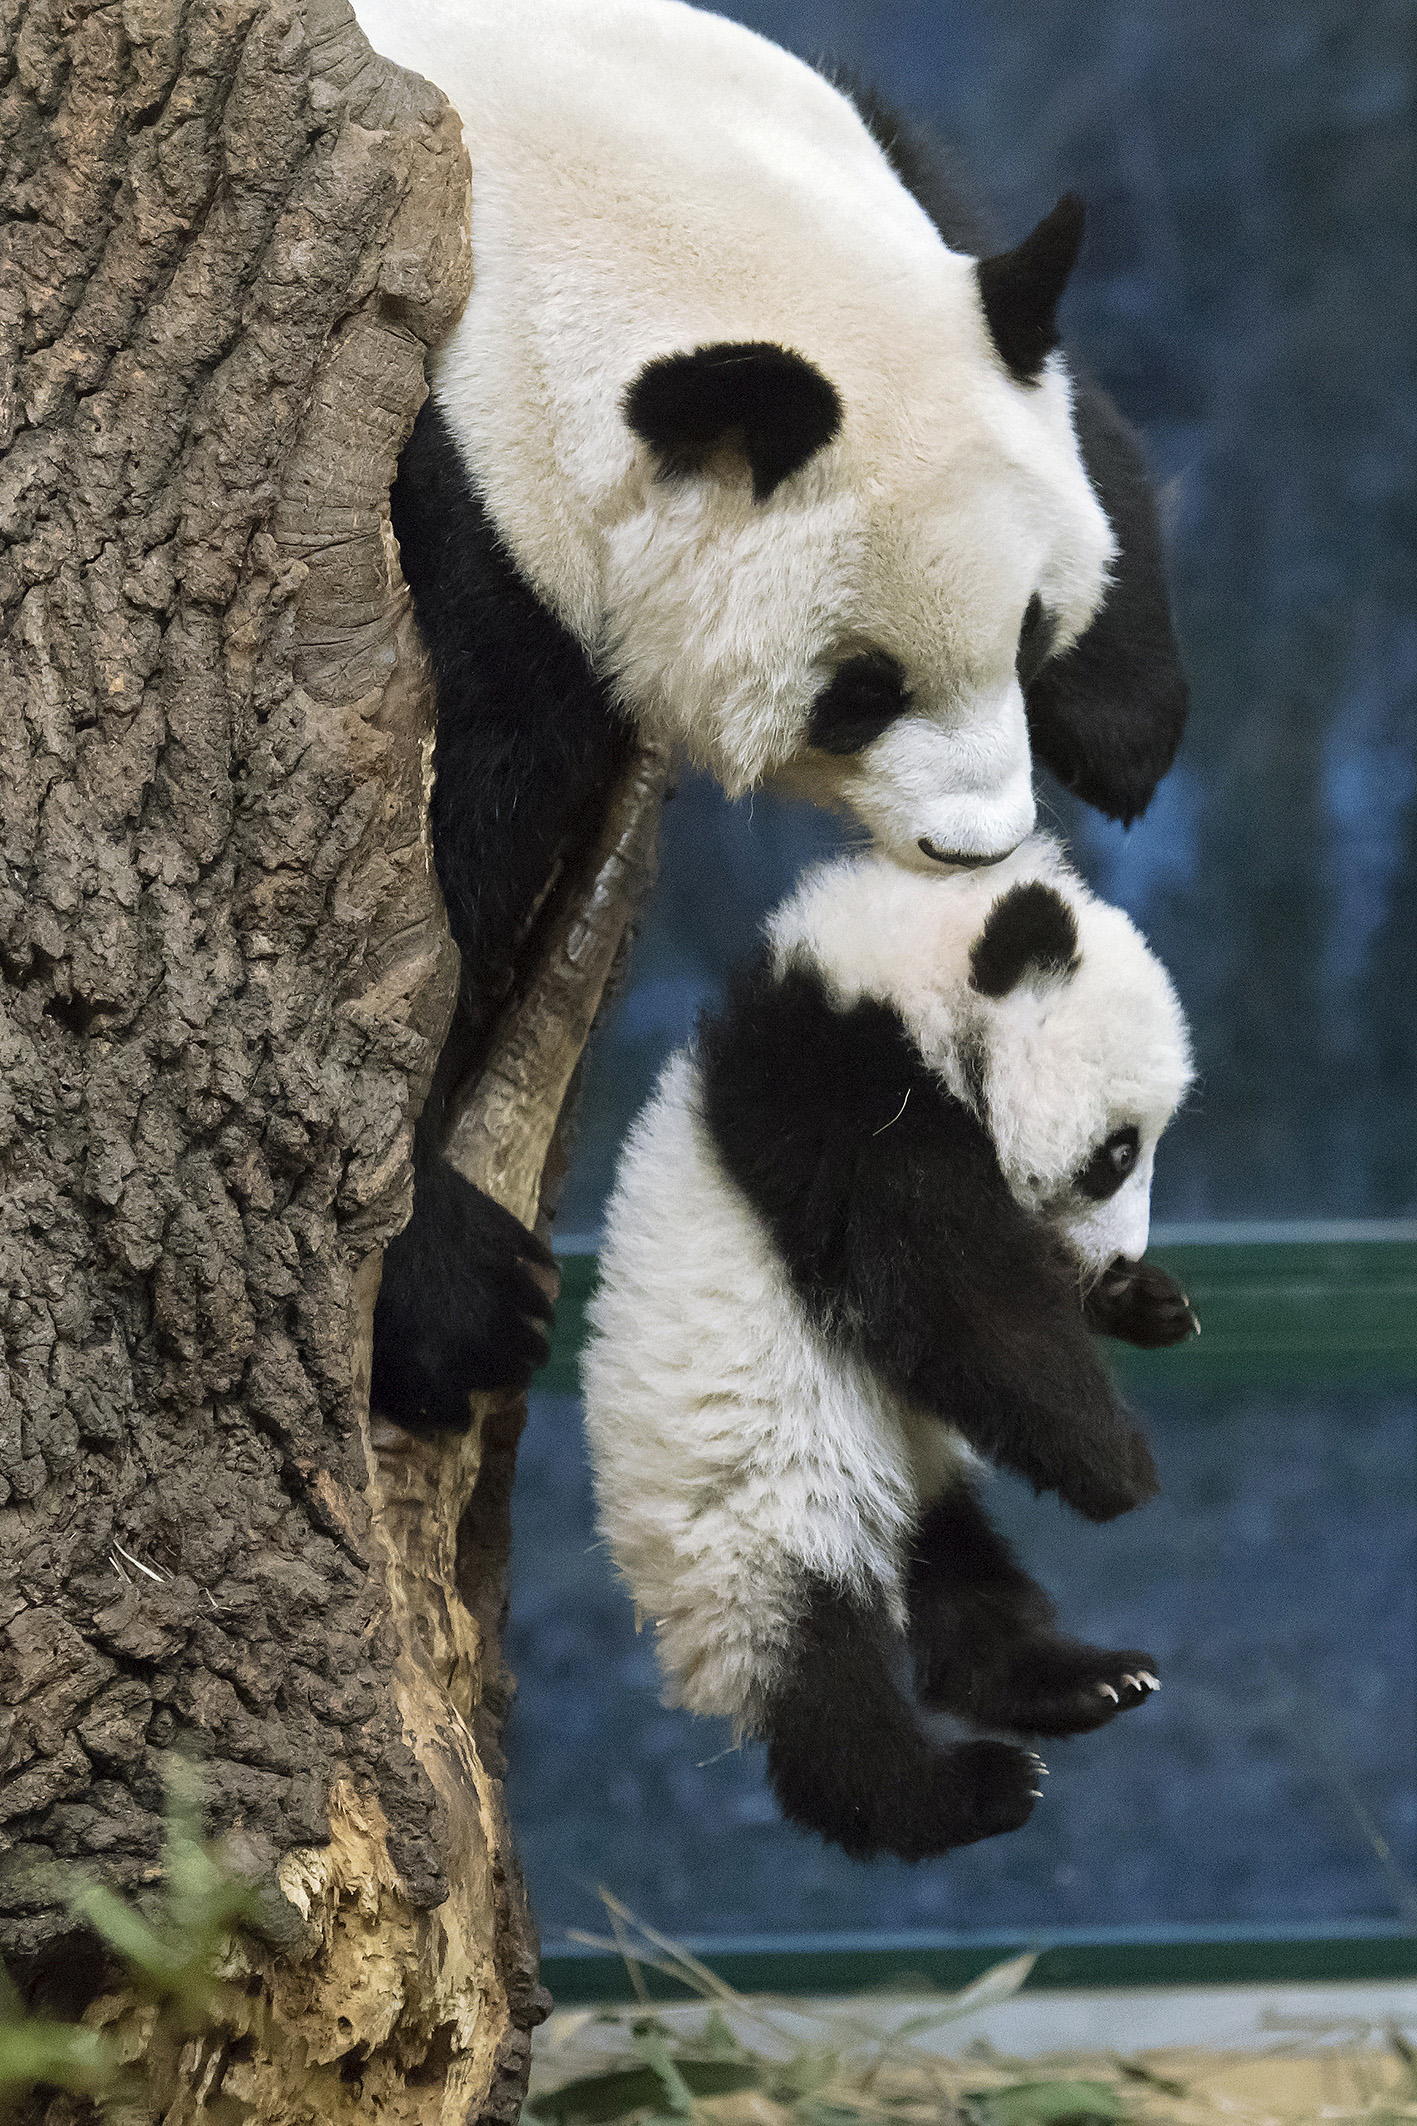 5 hónaposak a bécsi panda kölykök - Nézze meg Ön is, hogy mókáznak a bocsok  - Blikk